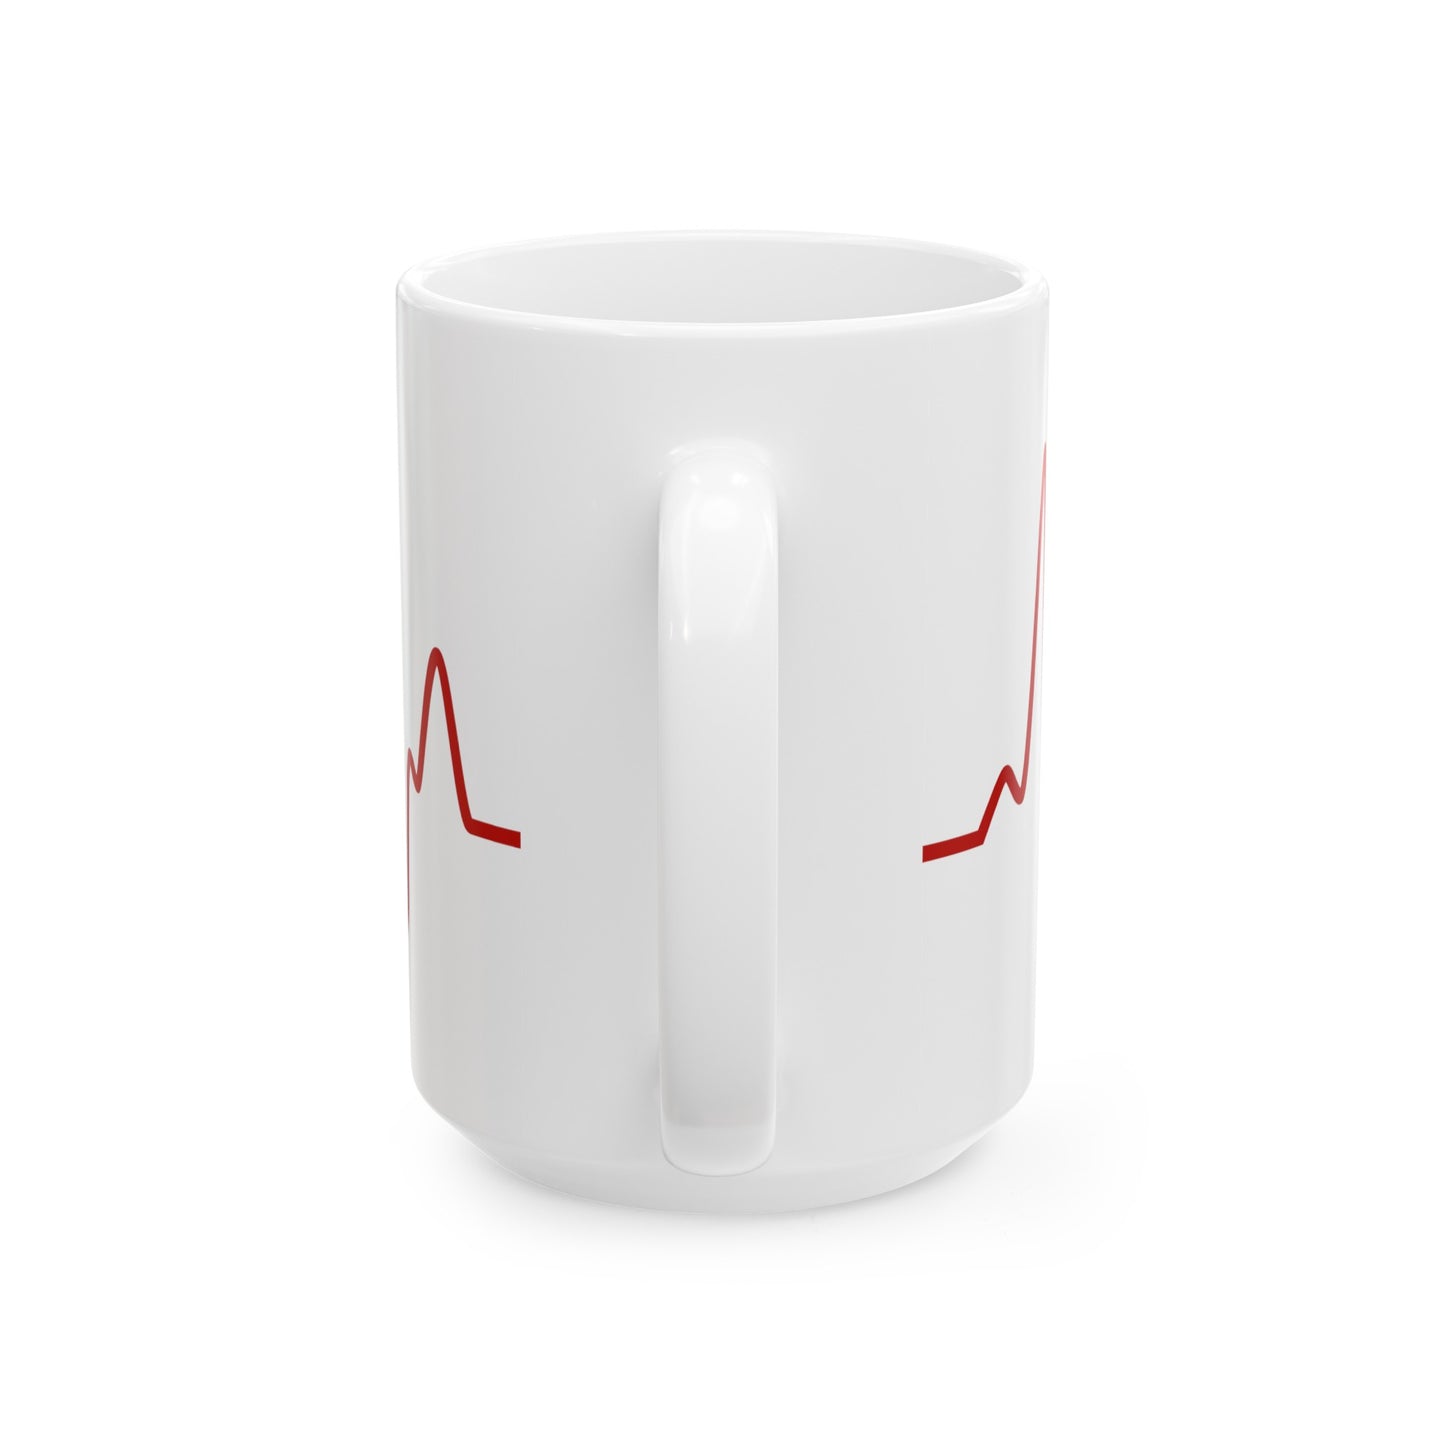 Sine Wave Coffee Mug - Double Sided White Ceramic 15oz by TheGlassyLass.com